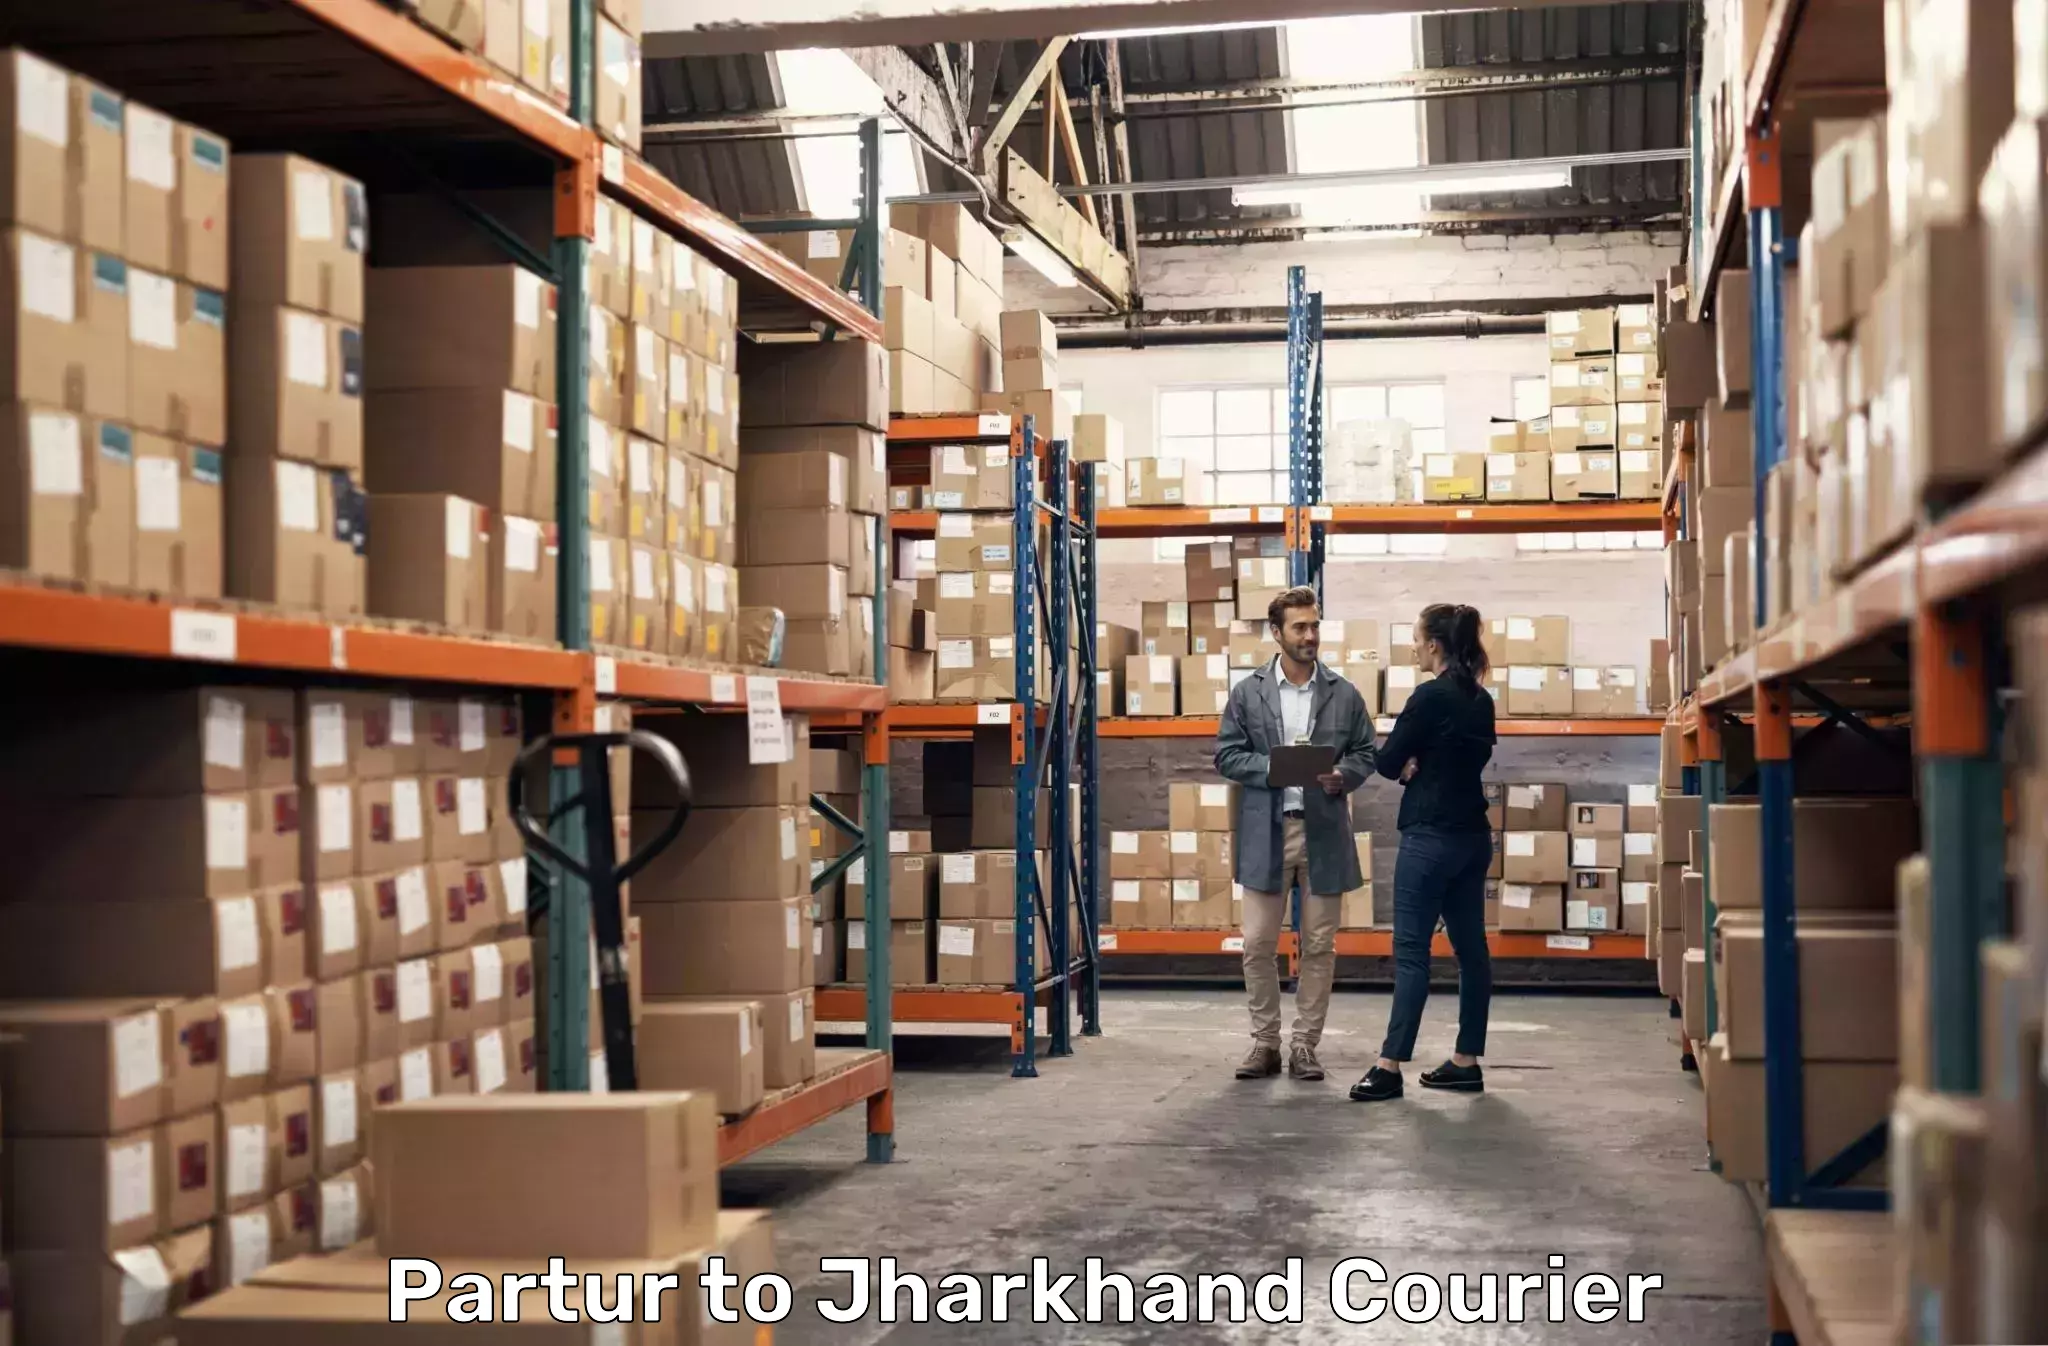 Nationwide parcel services Partur to Phusro